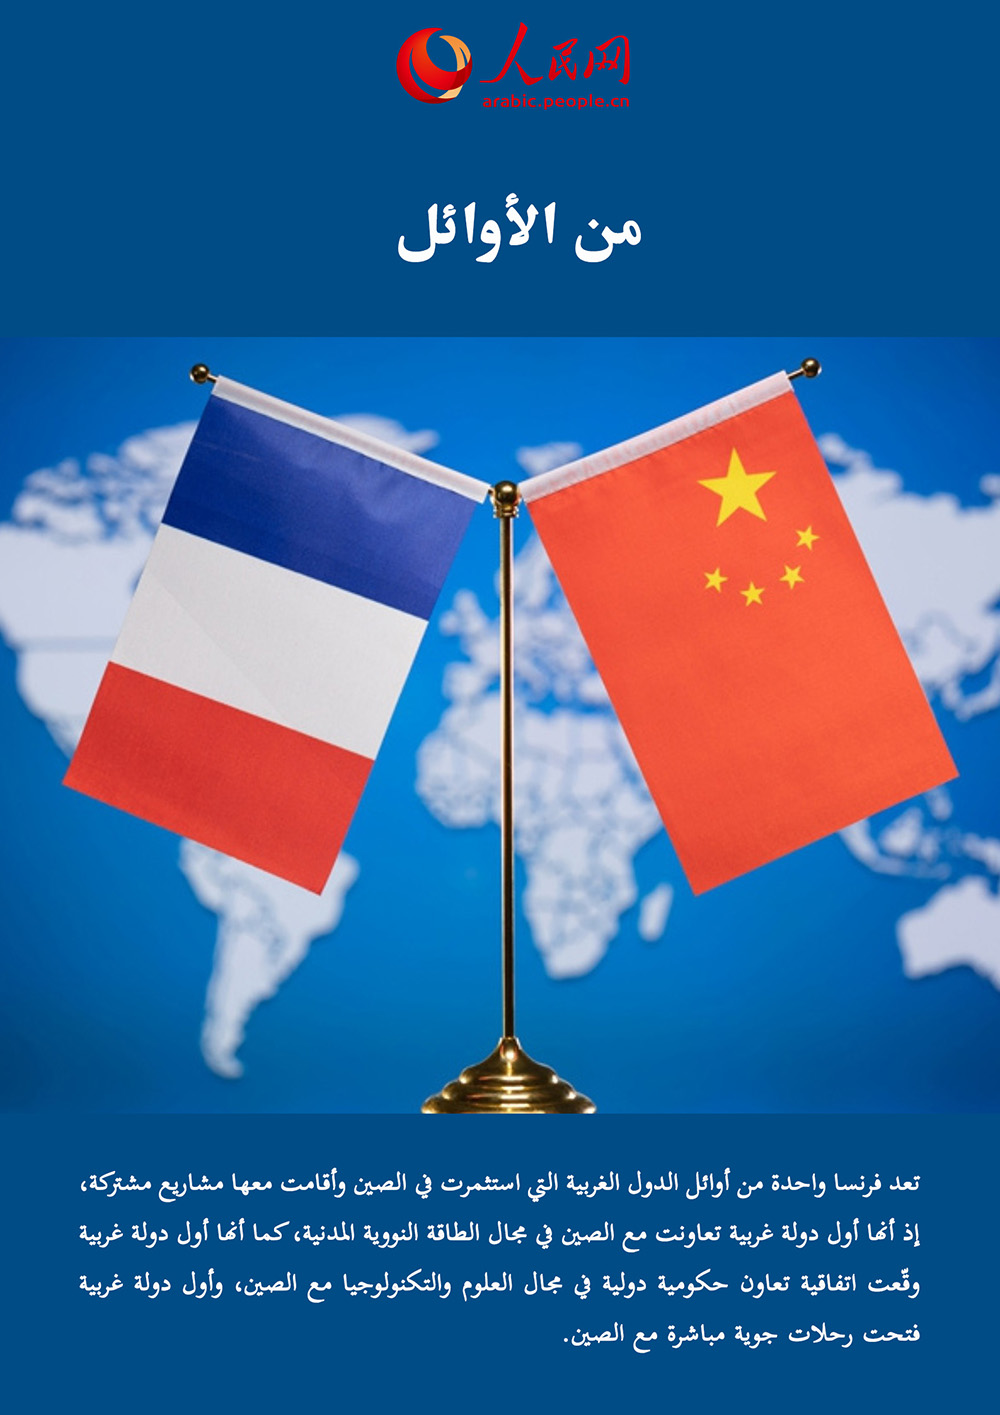 بالأرقام: نبذة مختصرة حول تطور التعاون المُشرق بين الصين وفرنسا